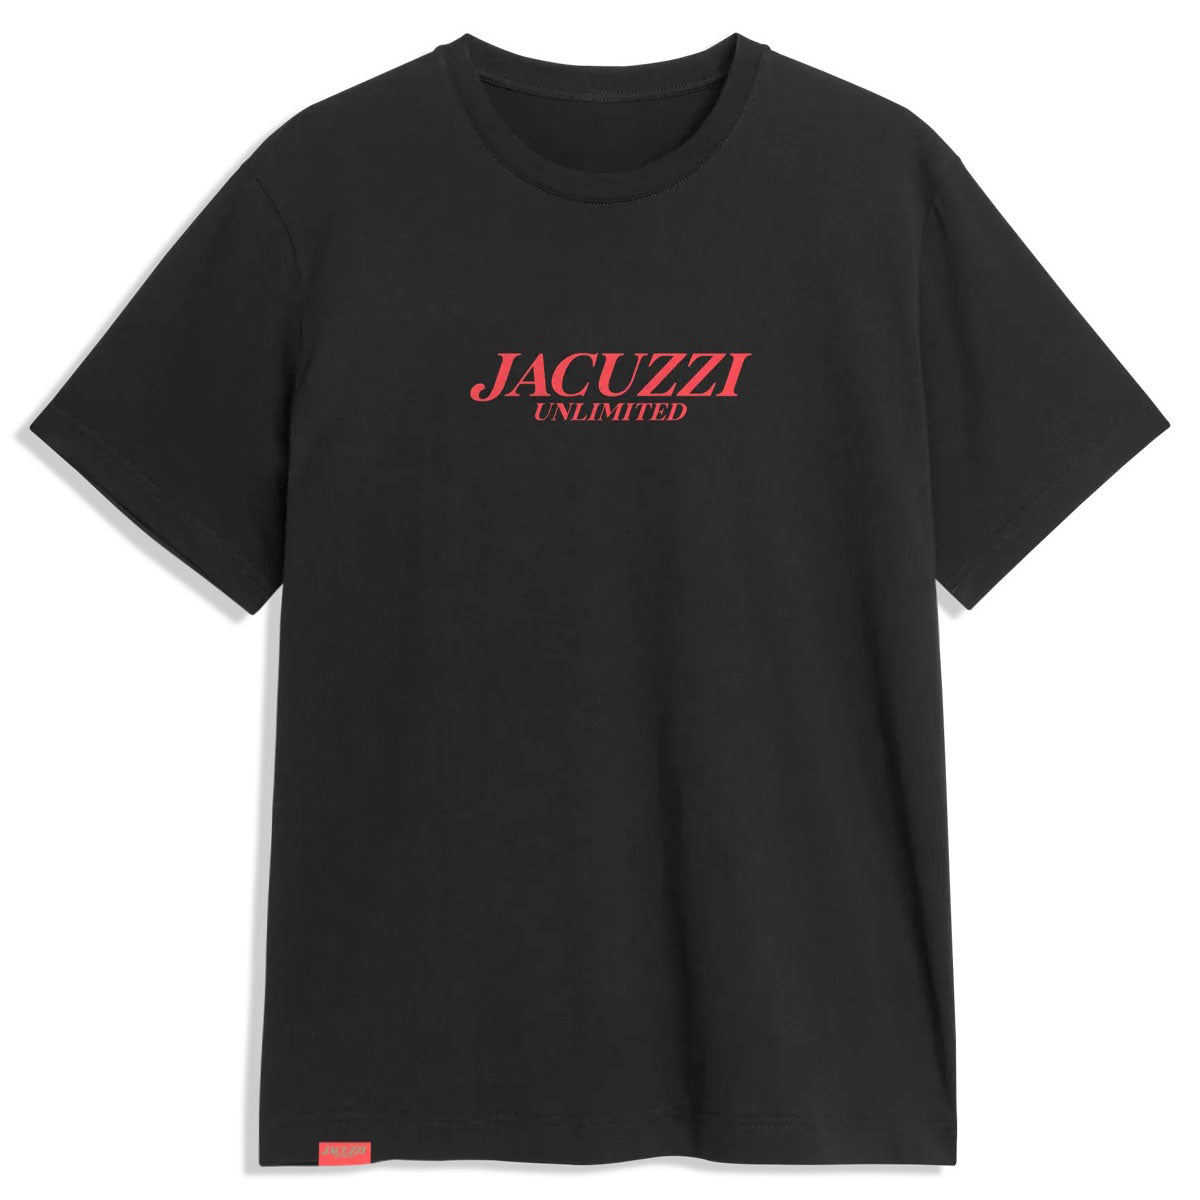 Jacuzzi Flavor Premium T-Shirt - Black/Salmon image 1